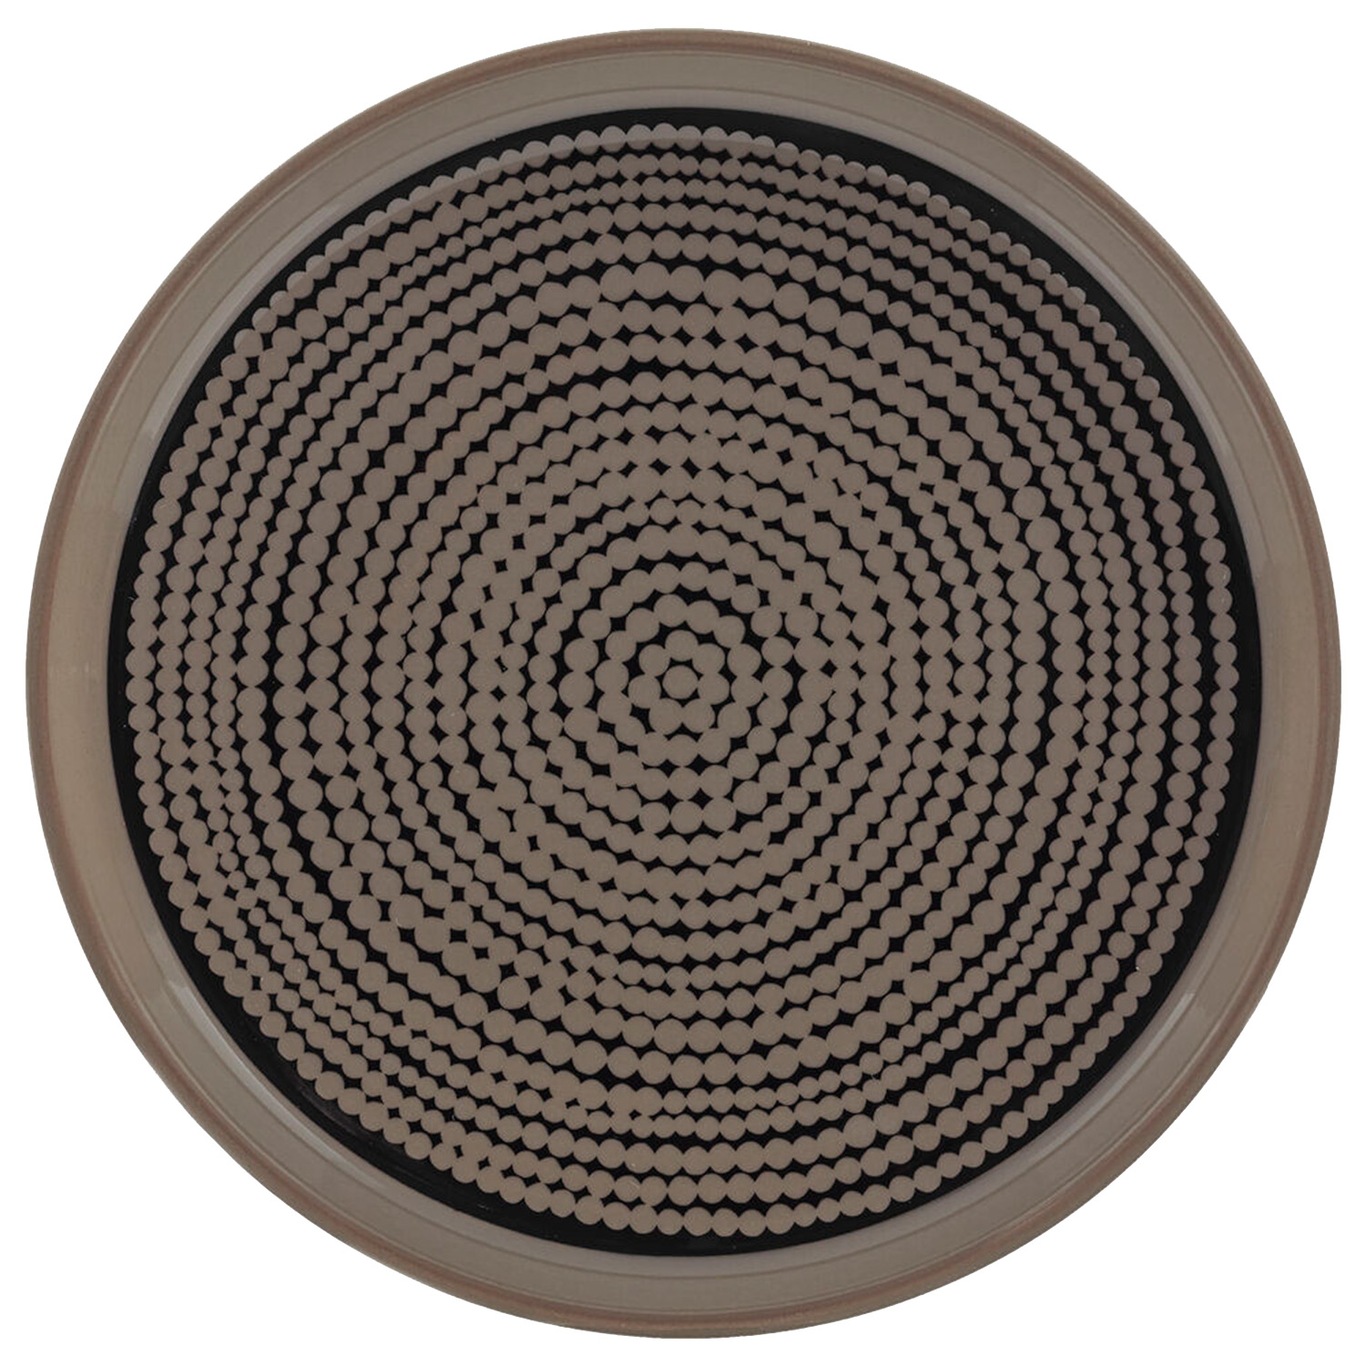 Oiva/Siirtolapuutarha Tallerken, Laget av brunt stentøy med et velkjent, småprikkete mønster 13,5 cm, Svart/Terra